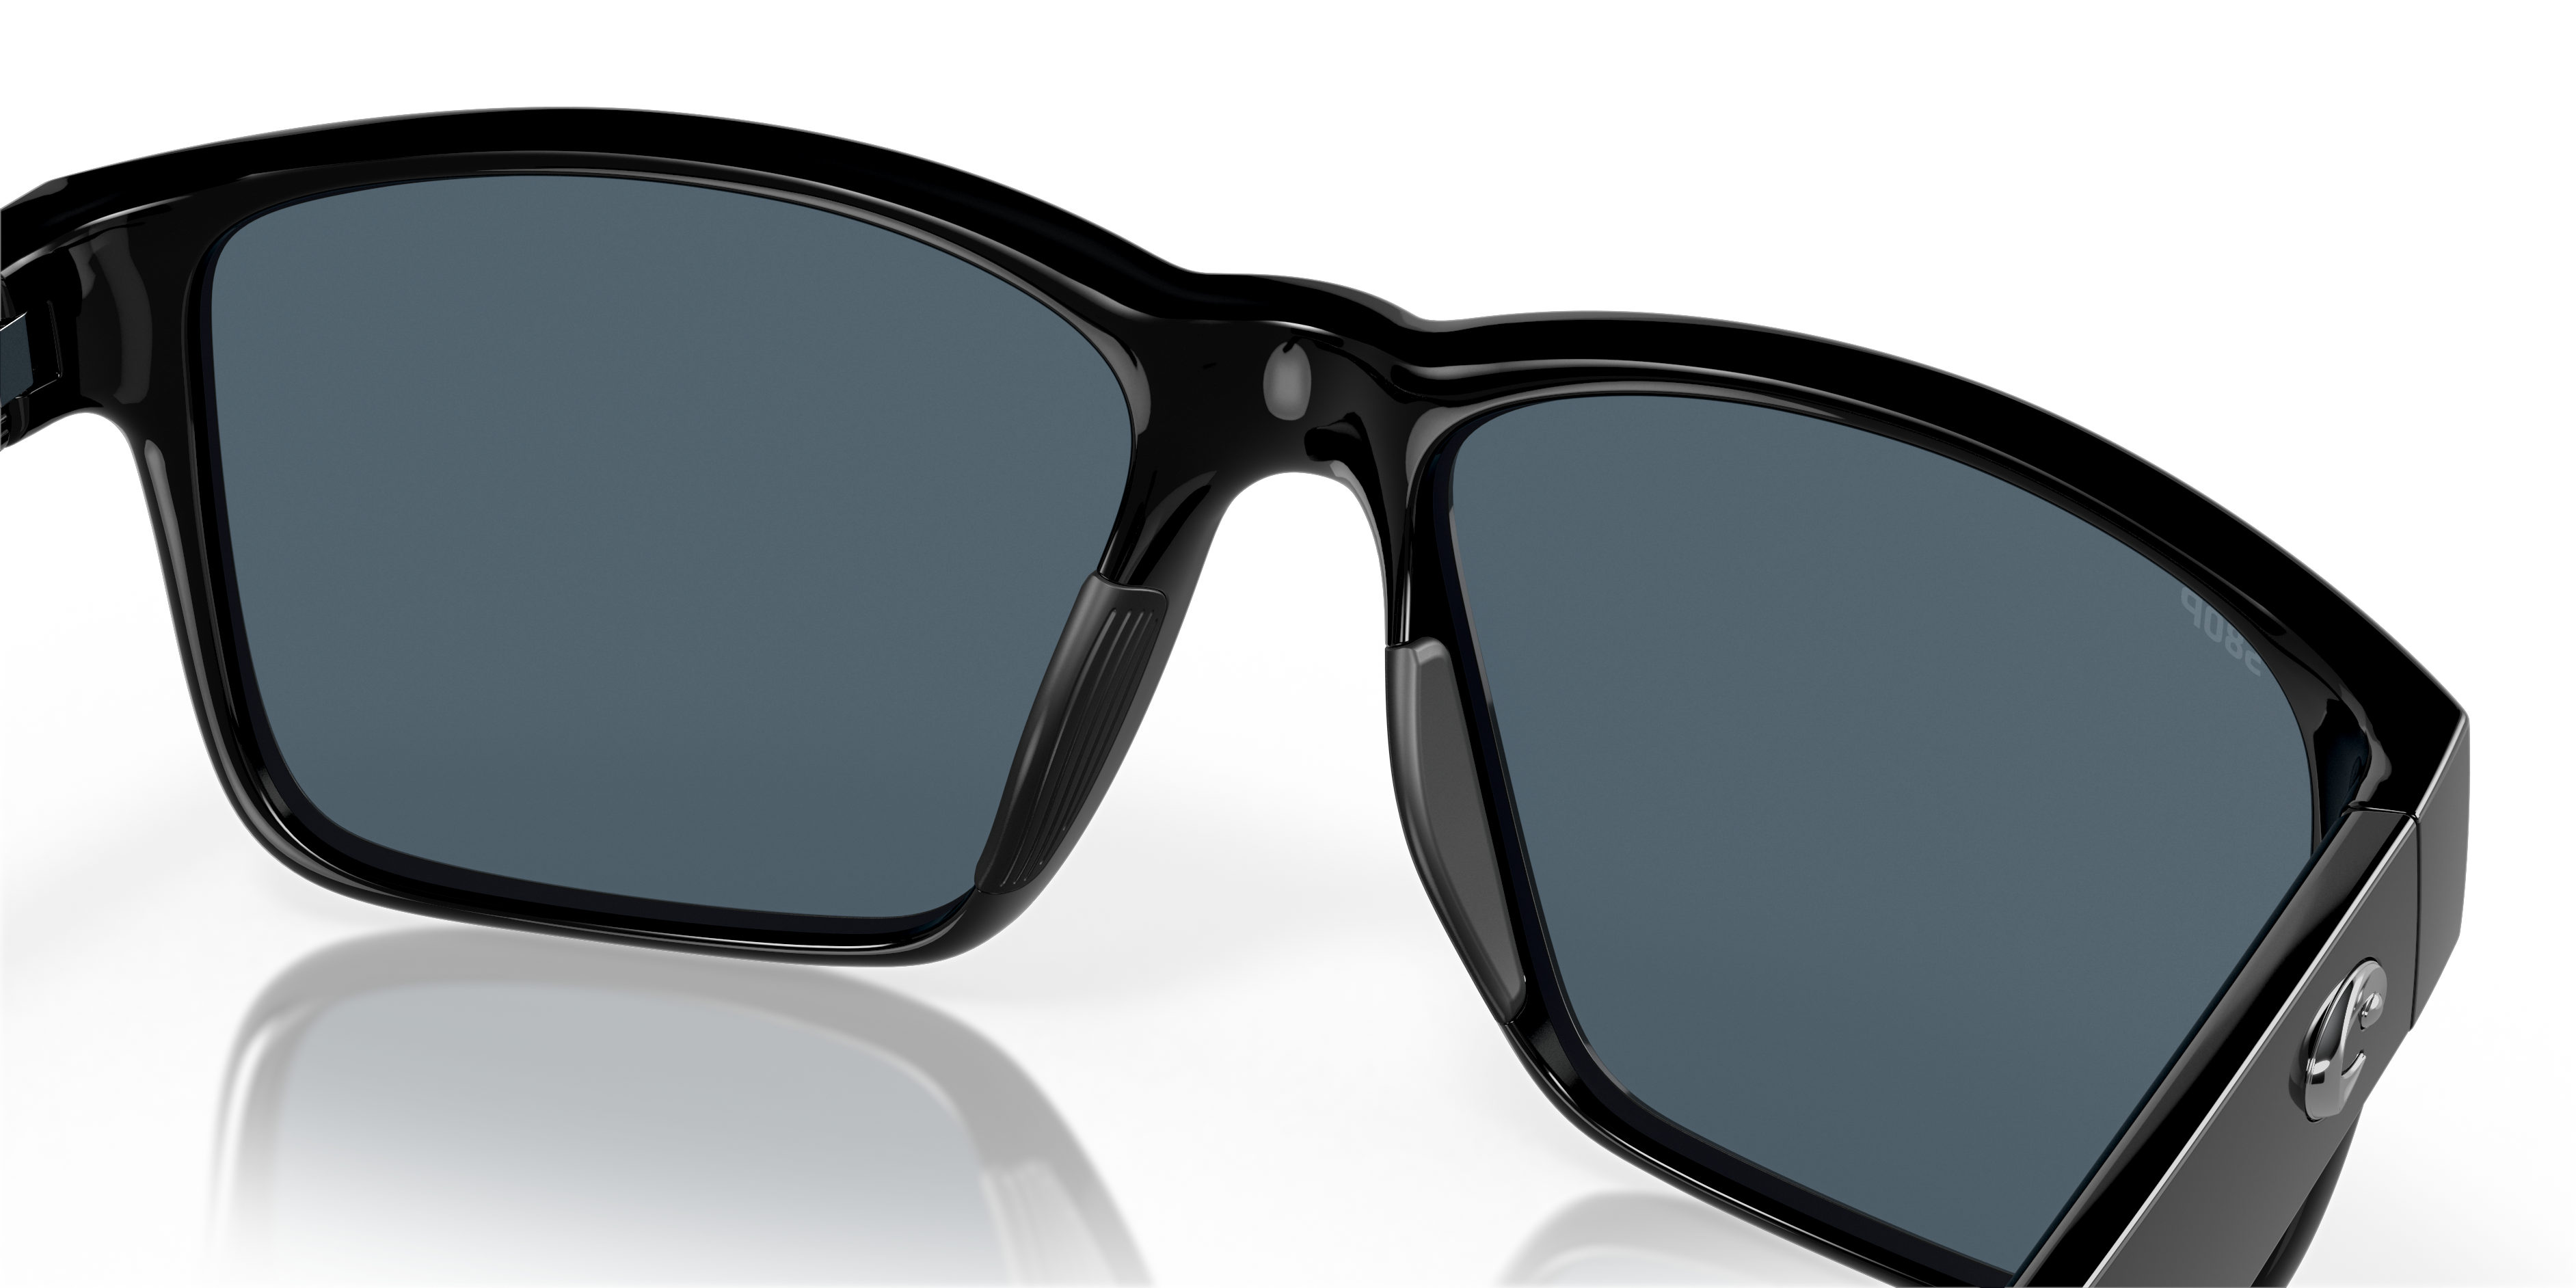 Paunch Polarized Sunglasses in Gray Costa Del Mar® image